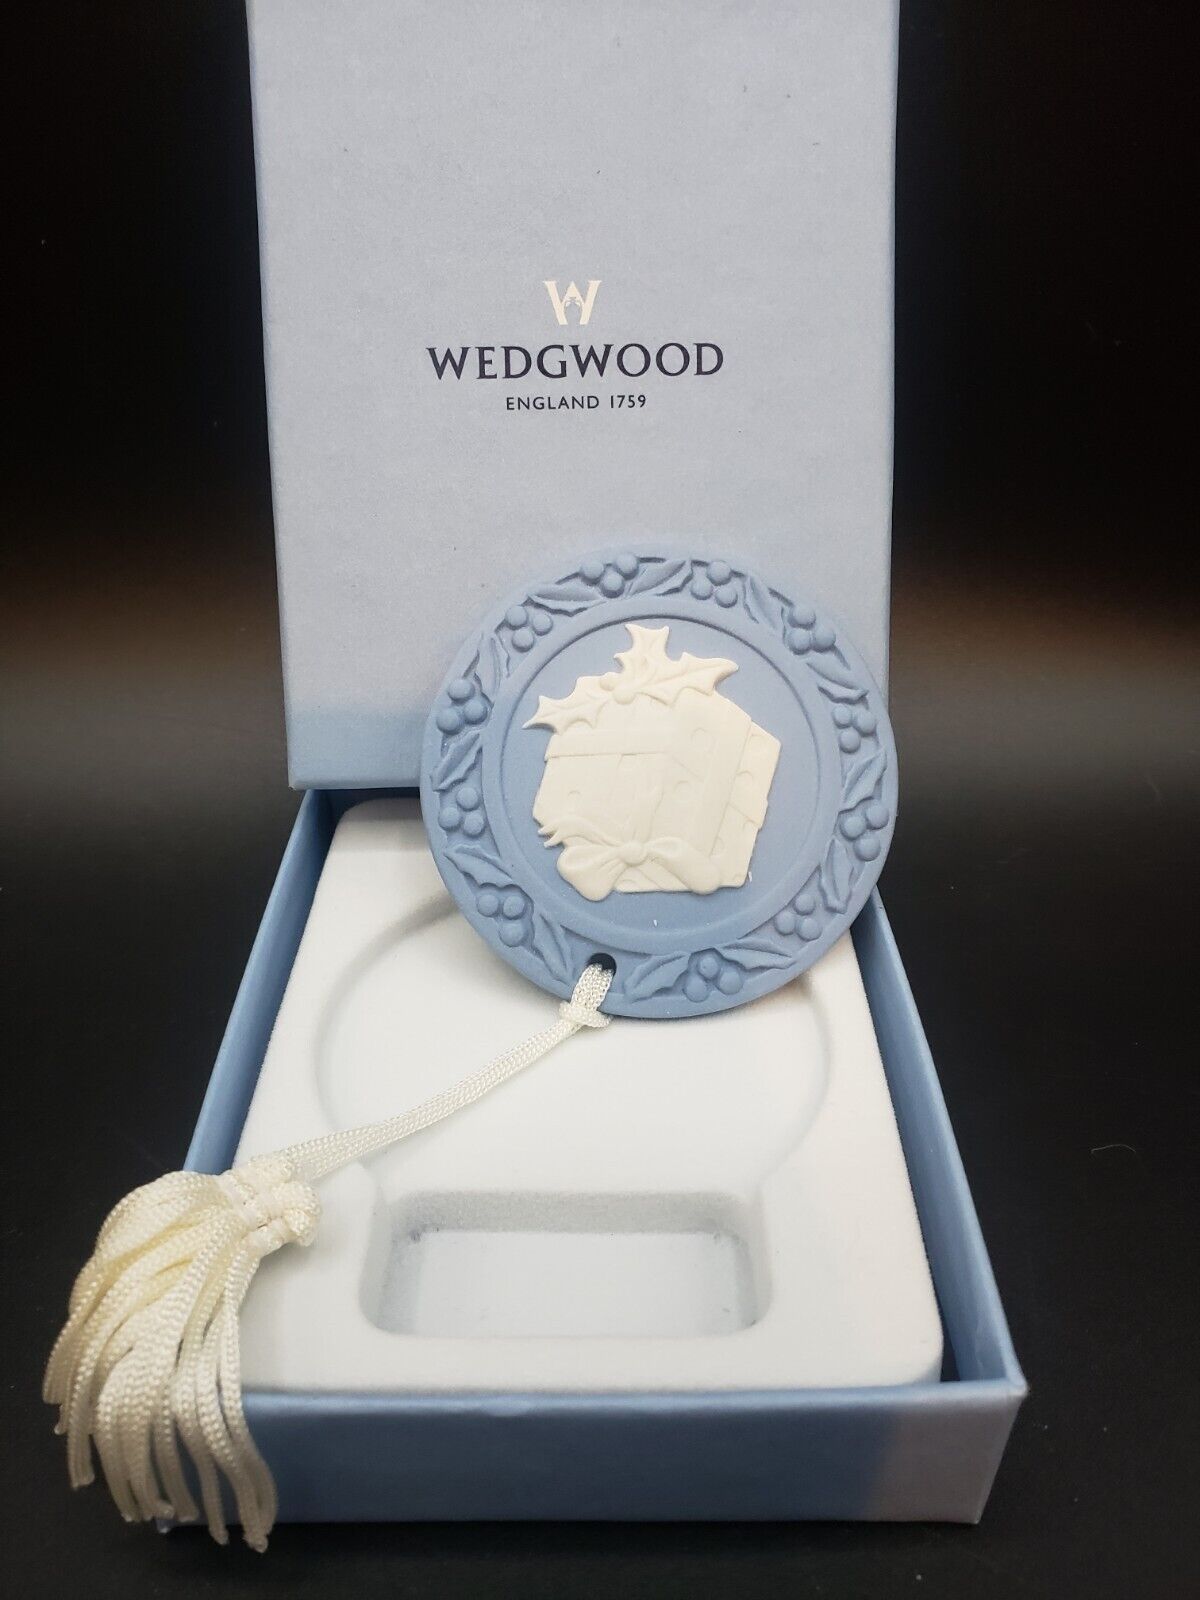 Wedgwood Est 1759 England Original Box Blue on Cream Medallion Rare